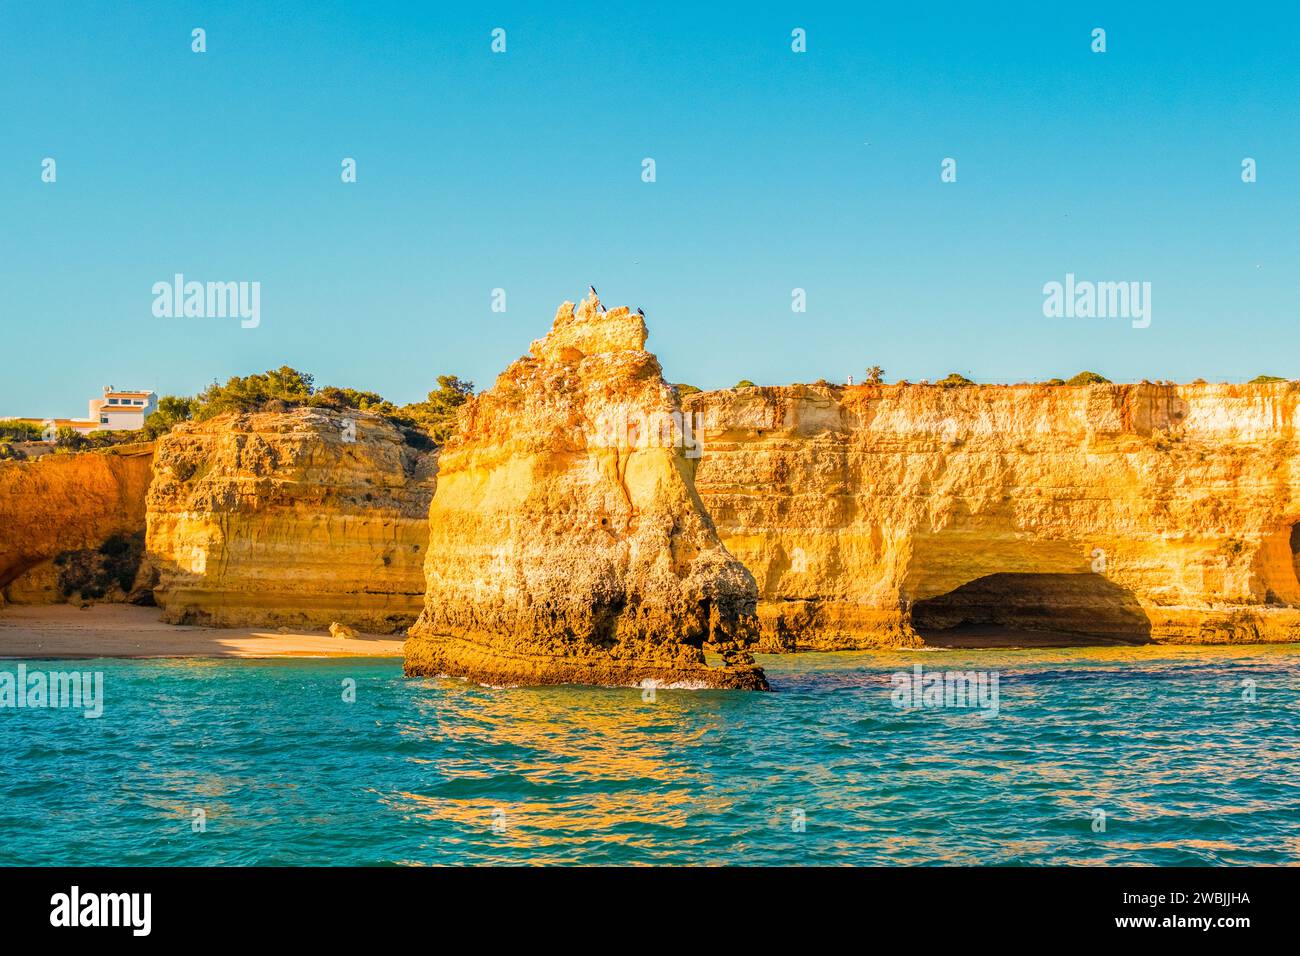 Splendida costa calcarea dell'Algarve con grotte e formazioni rocciose, Albufeira, a sud del Portogallo Foto Stock